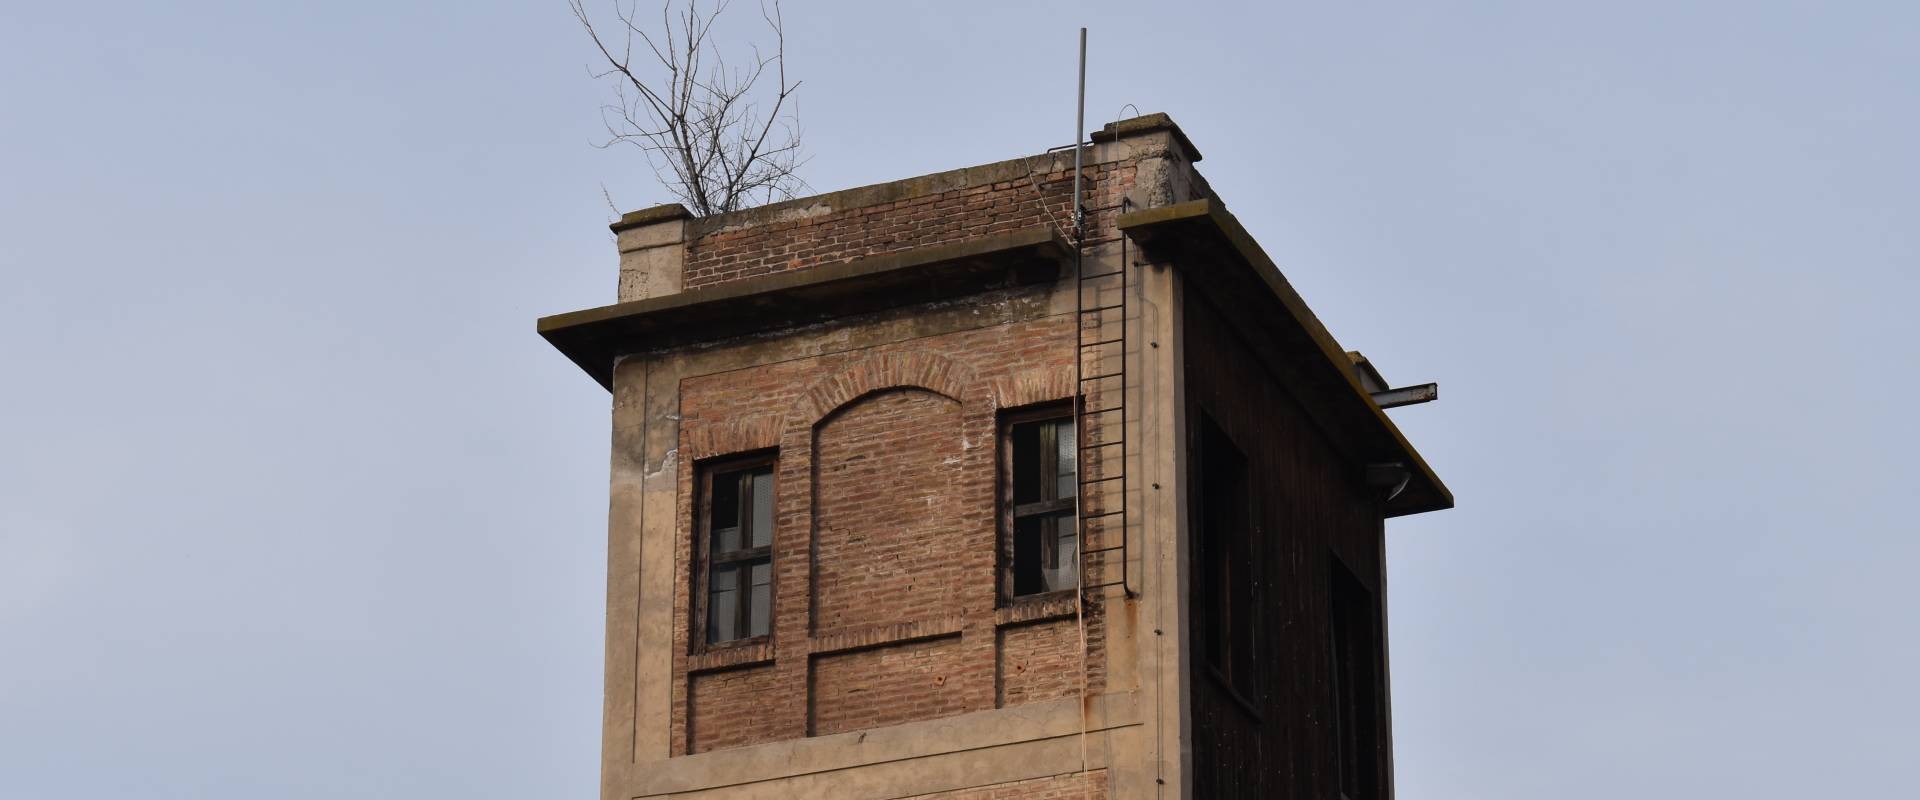 Torre ex comando Provinciale Vigili del Fuoco Ferrara photo by Nicola Quirico